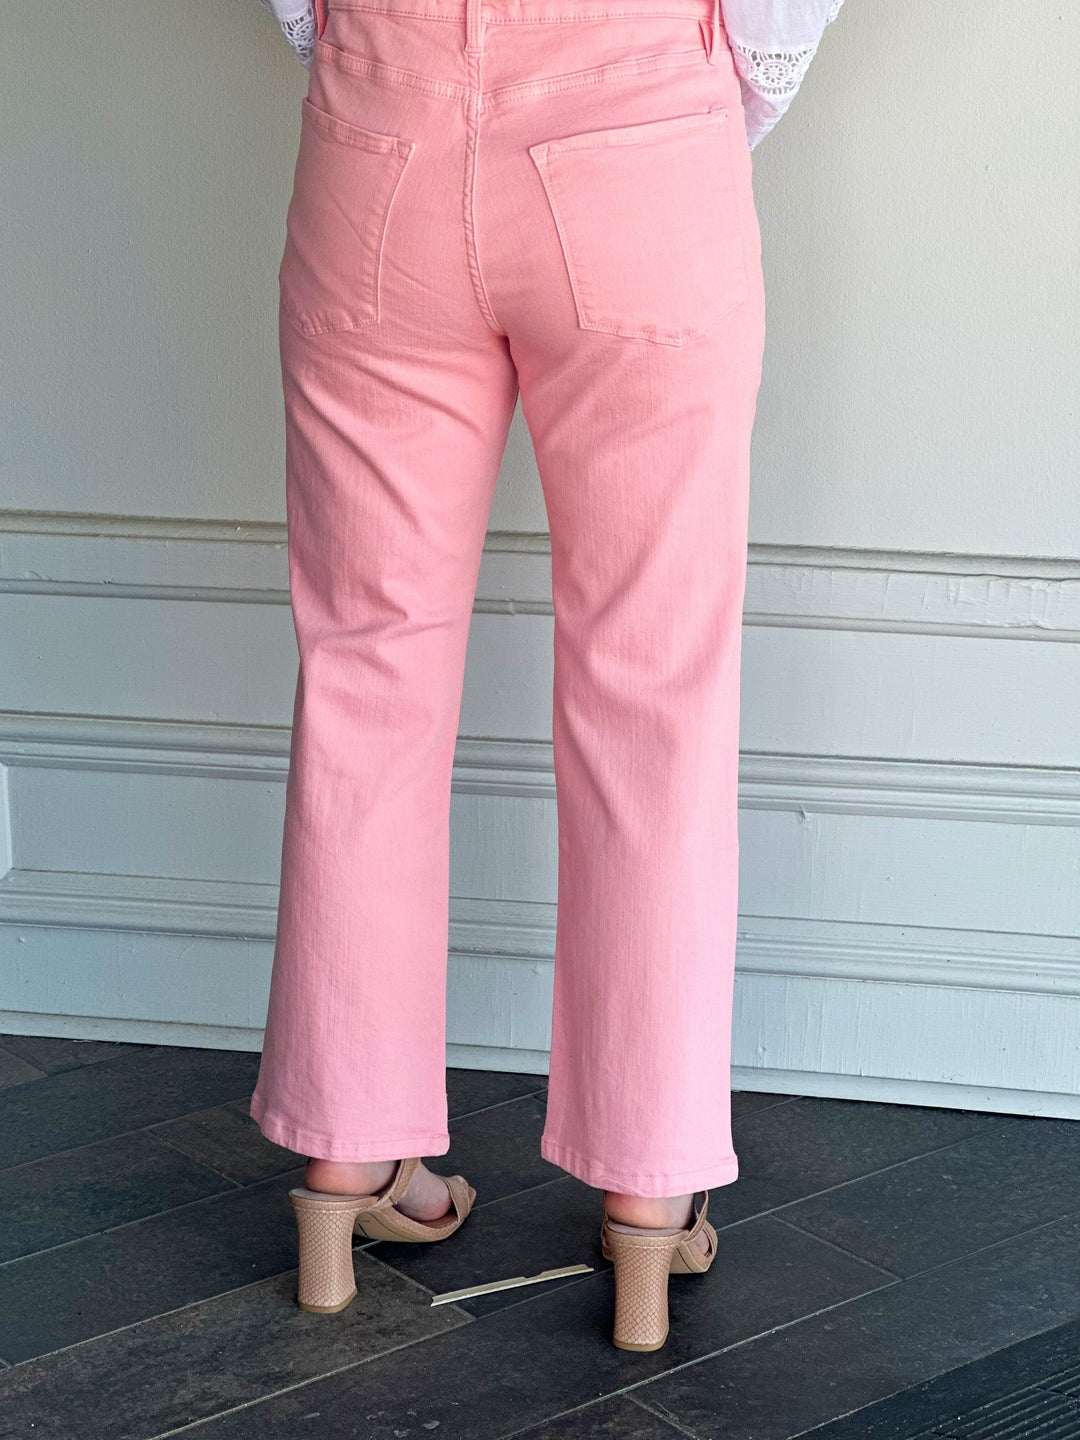 Elliott Lauren Spring Pink Jean